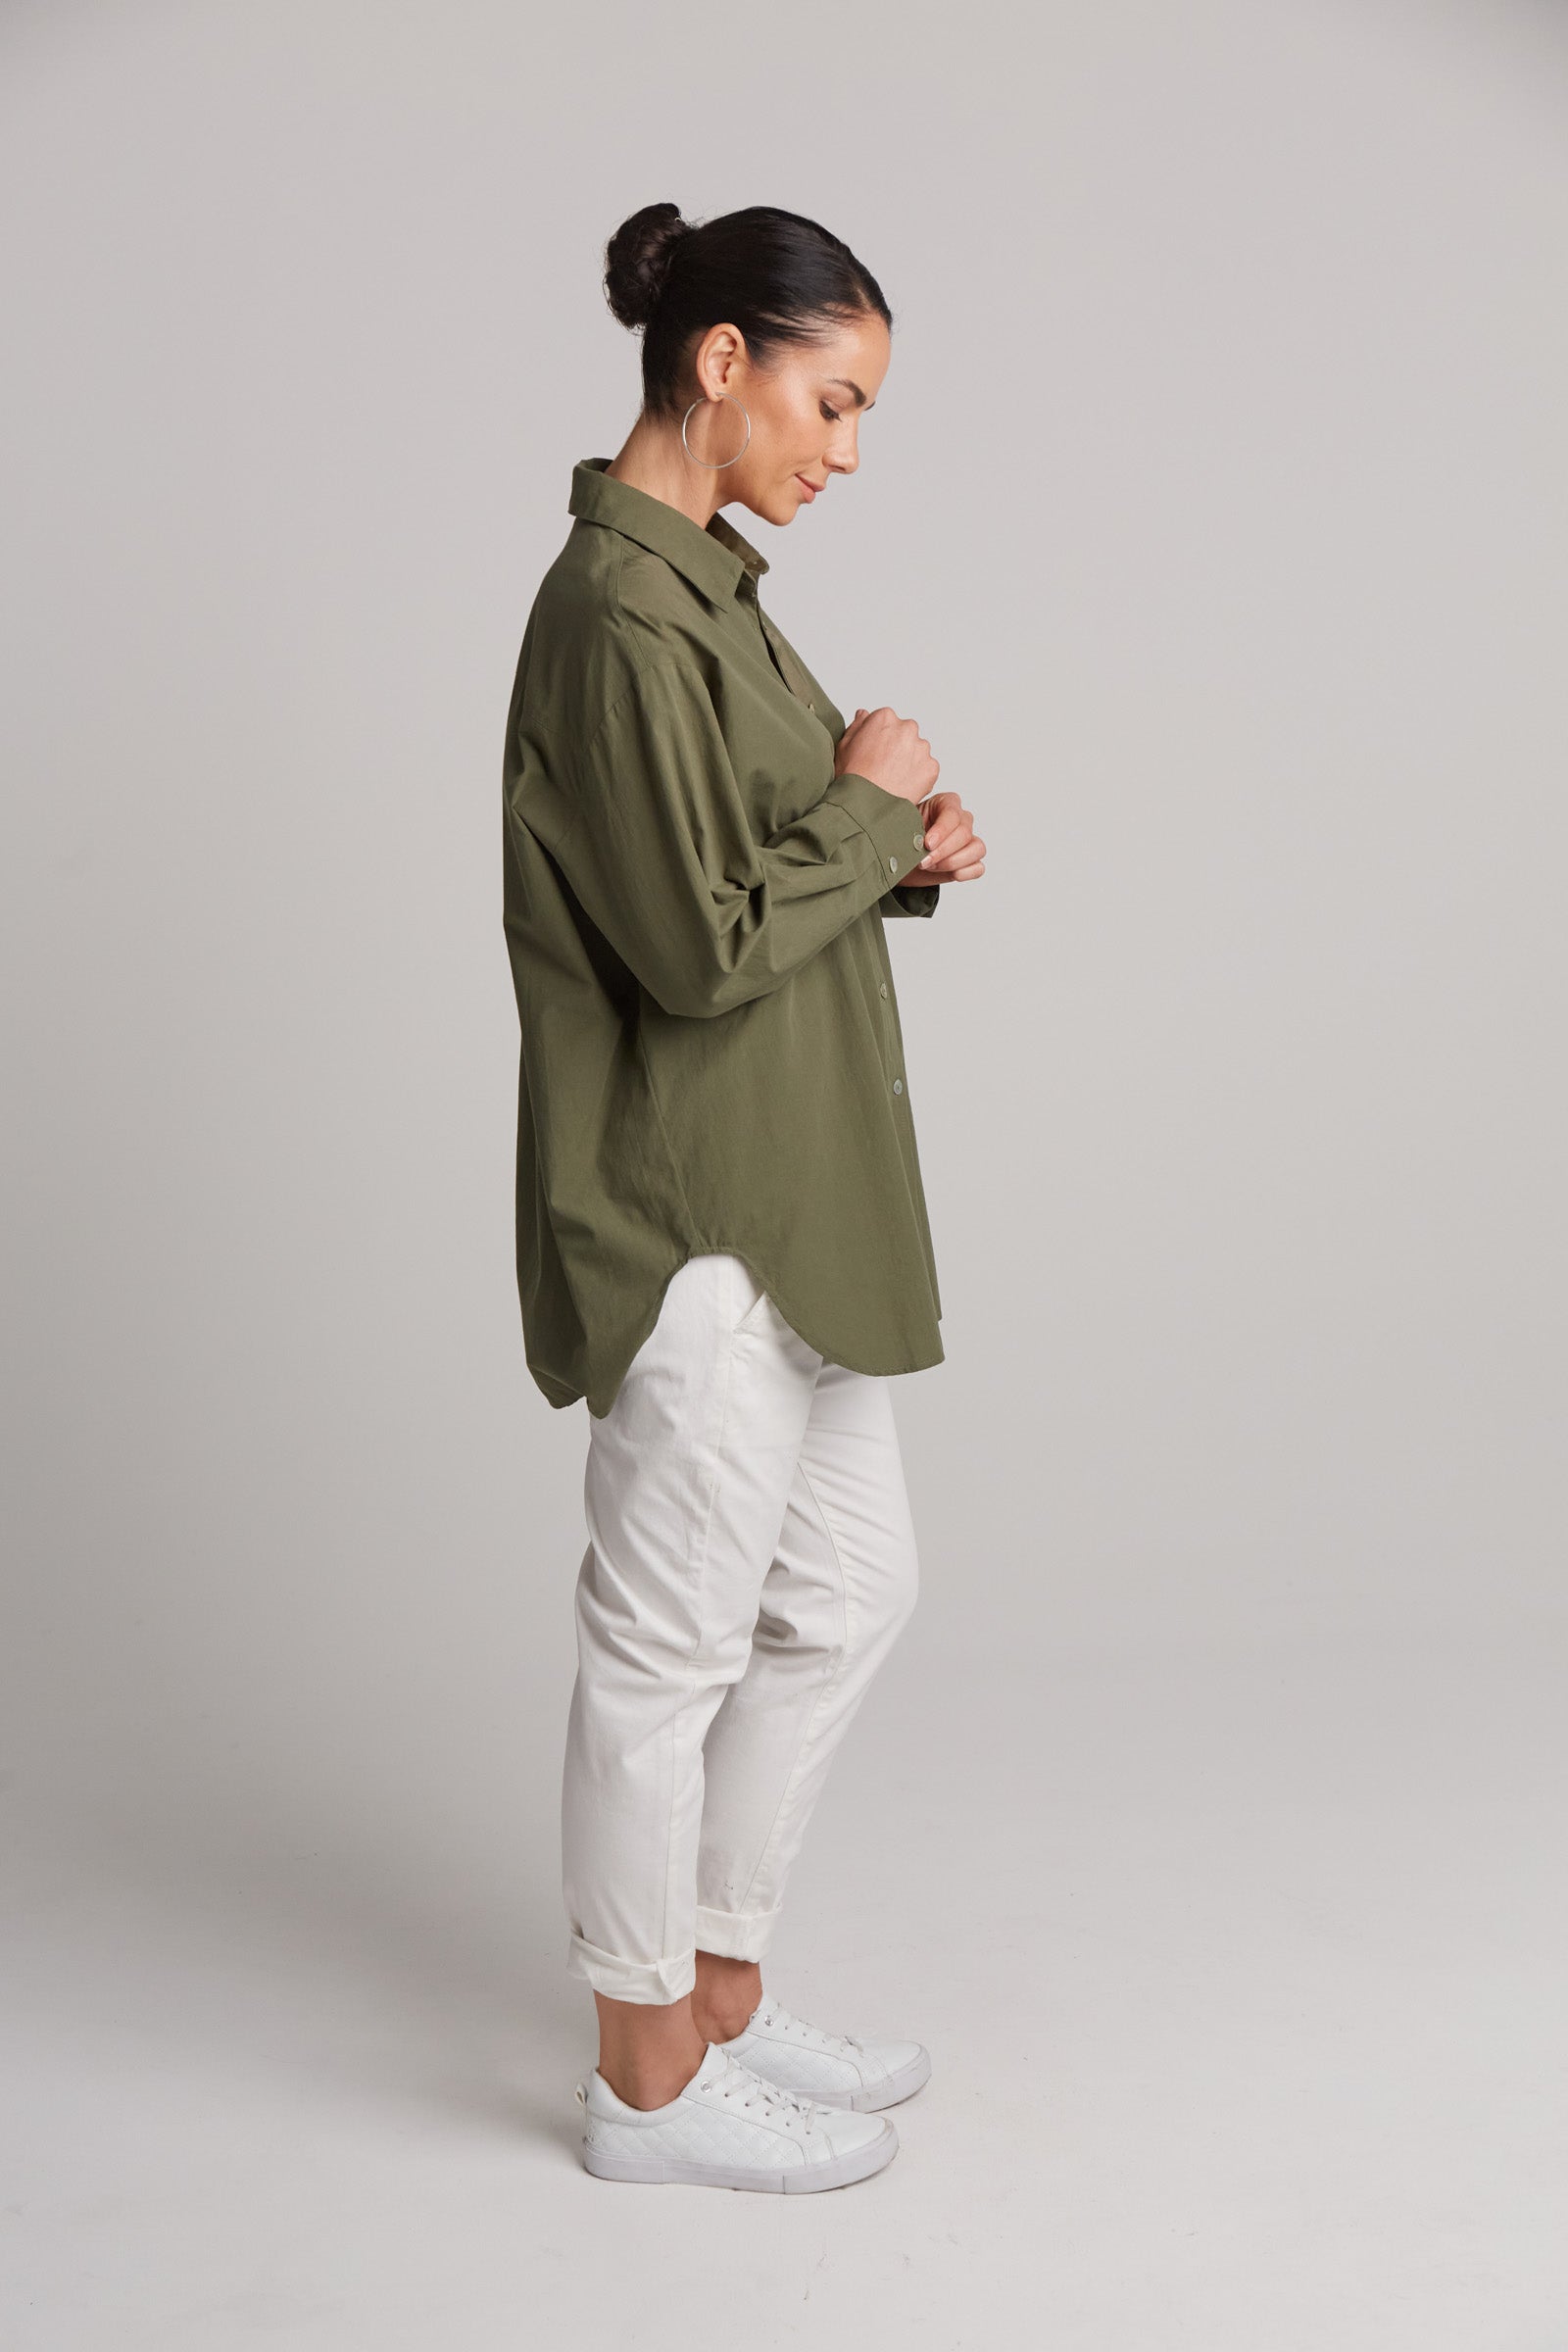 Studio Oversize Shirt - Khaki - eb&ive Clothing - Shirt L/S